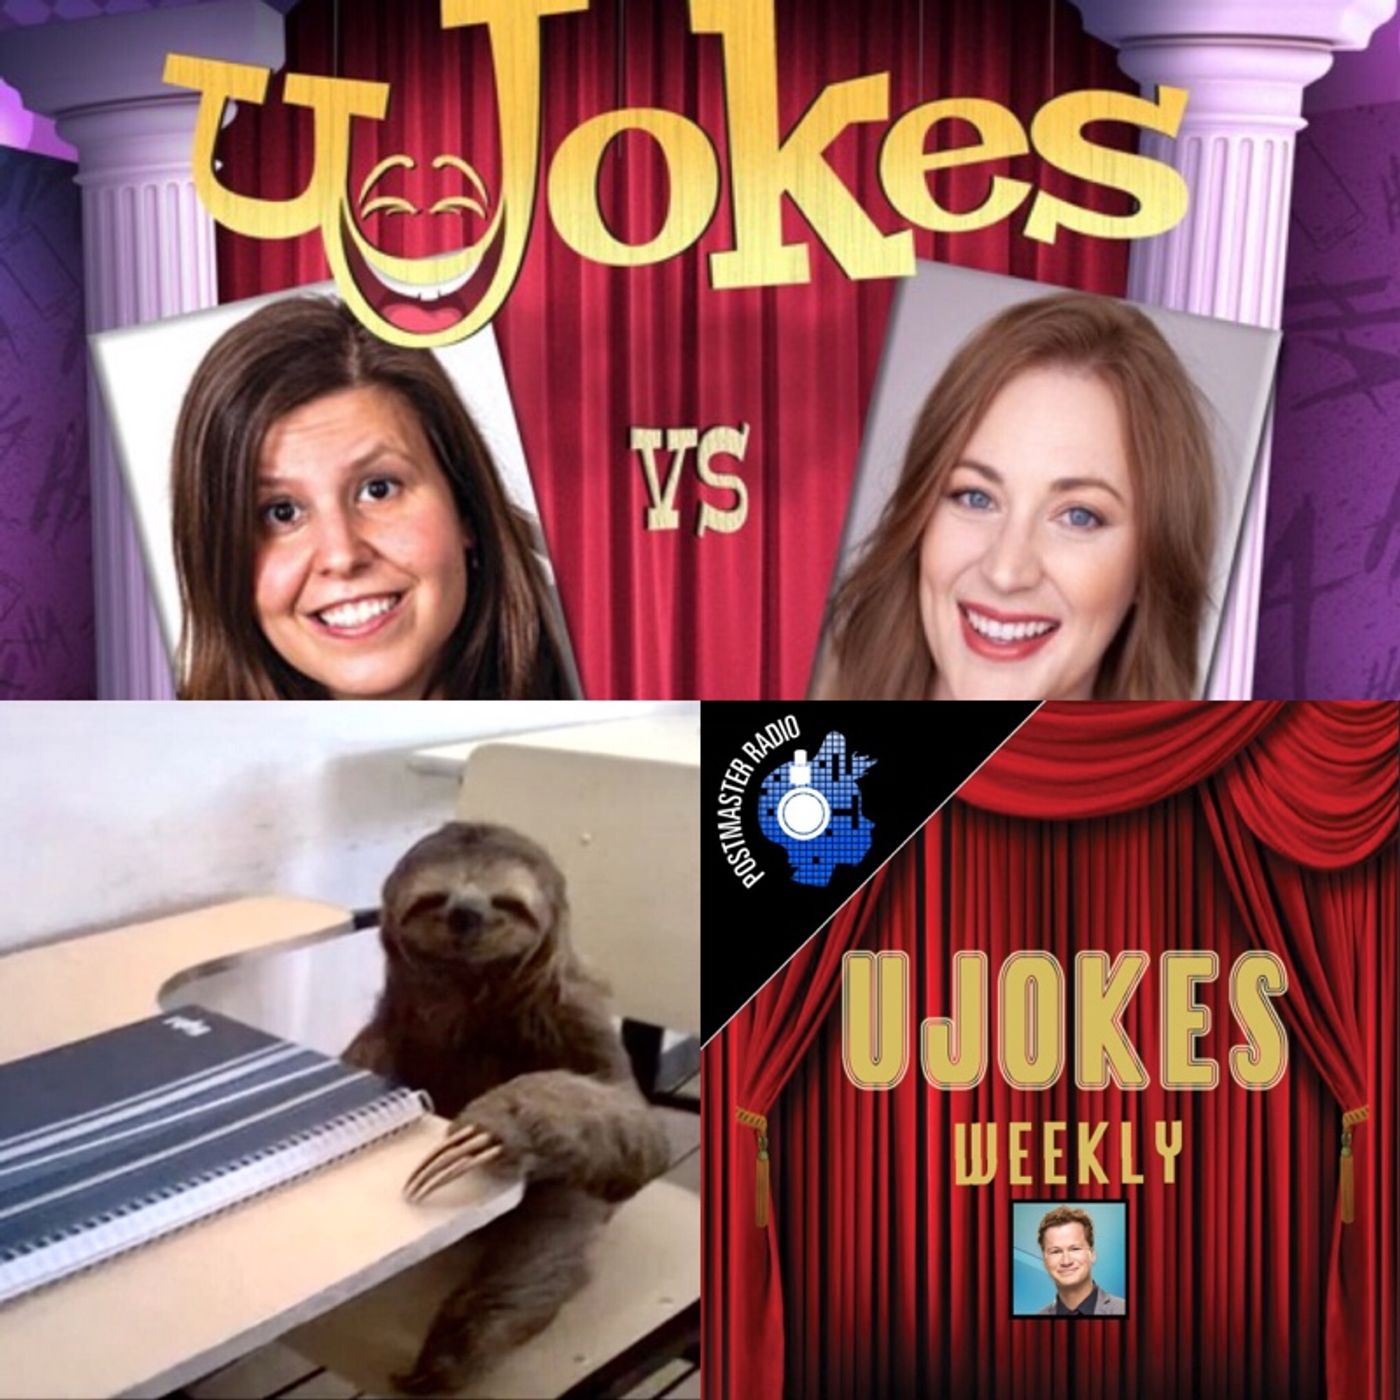 Top 5 Jokes from Ujokes Episode 84